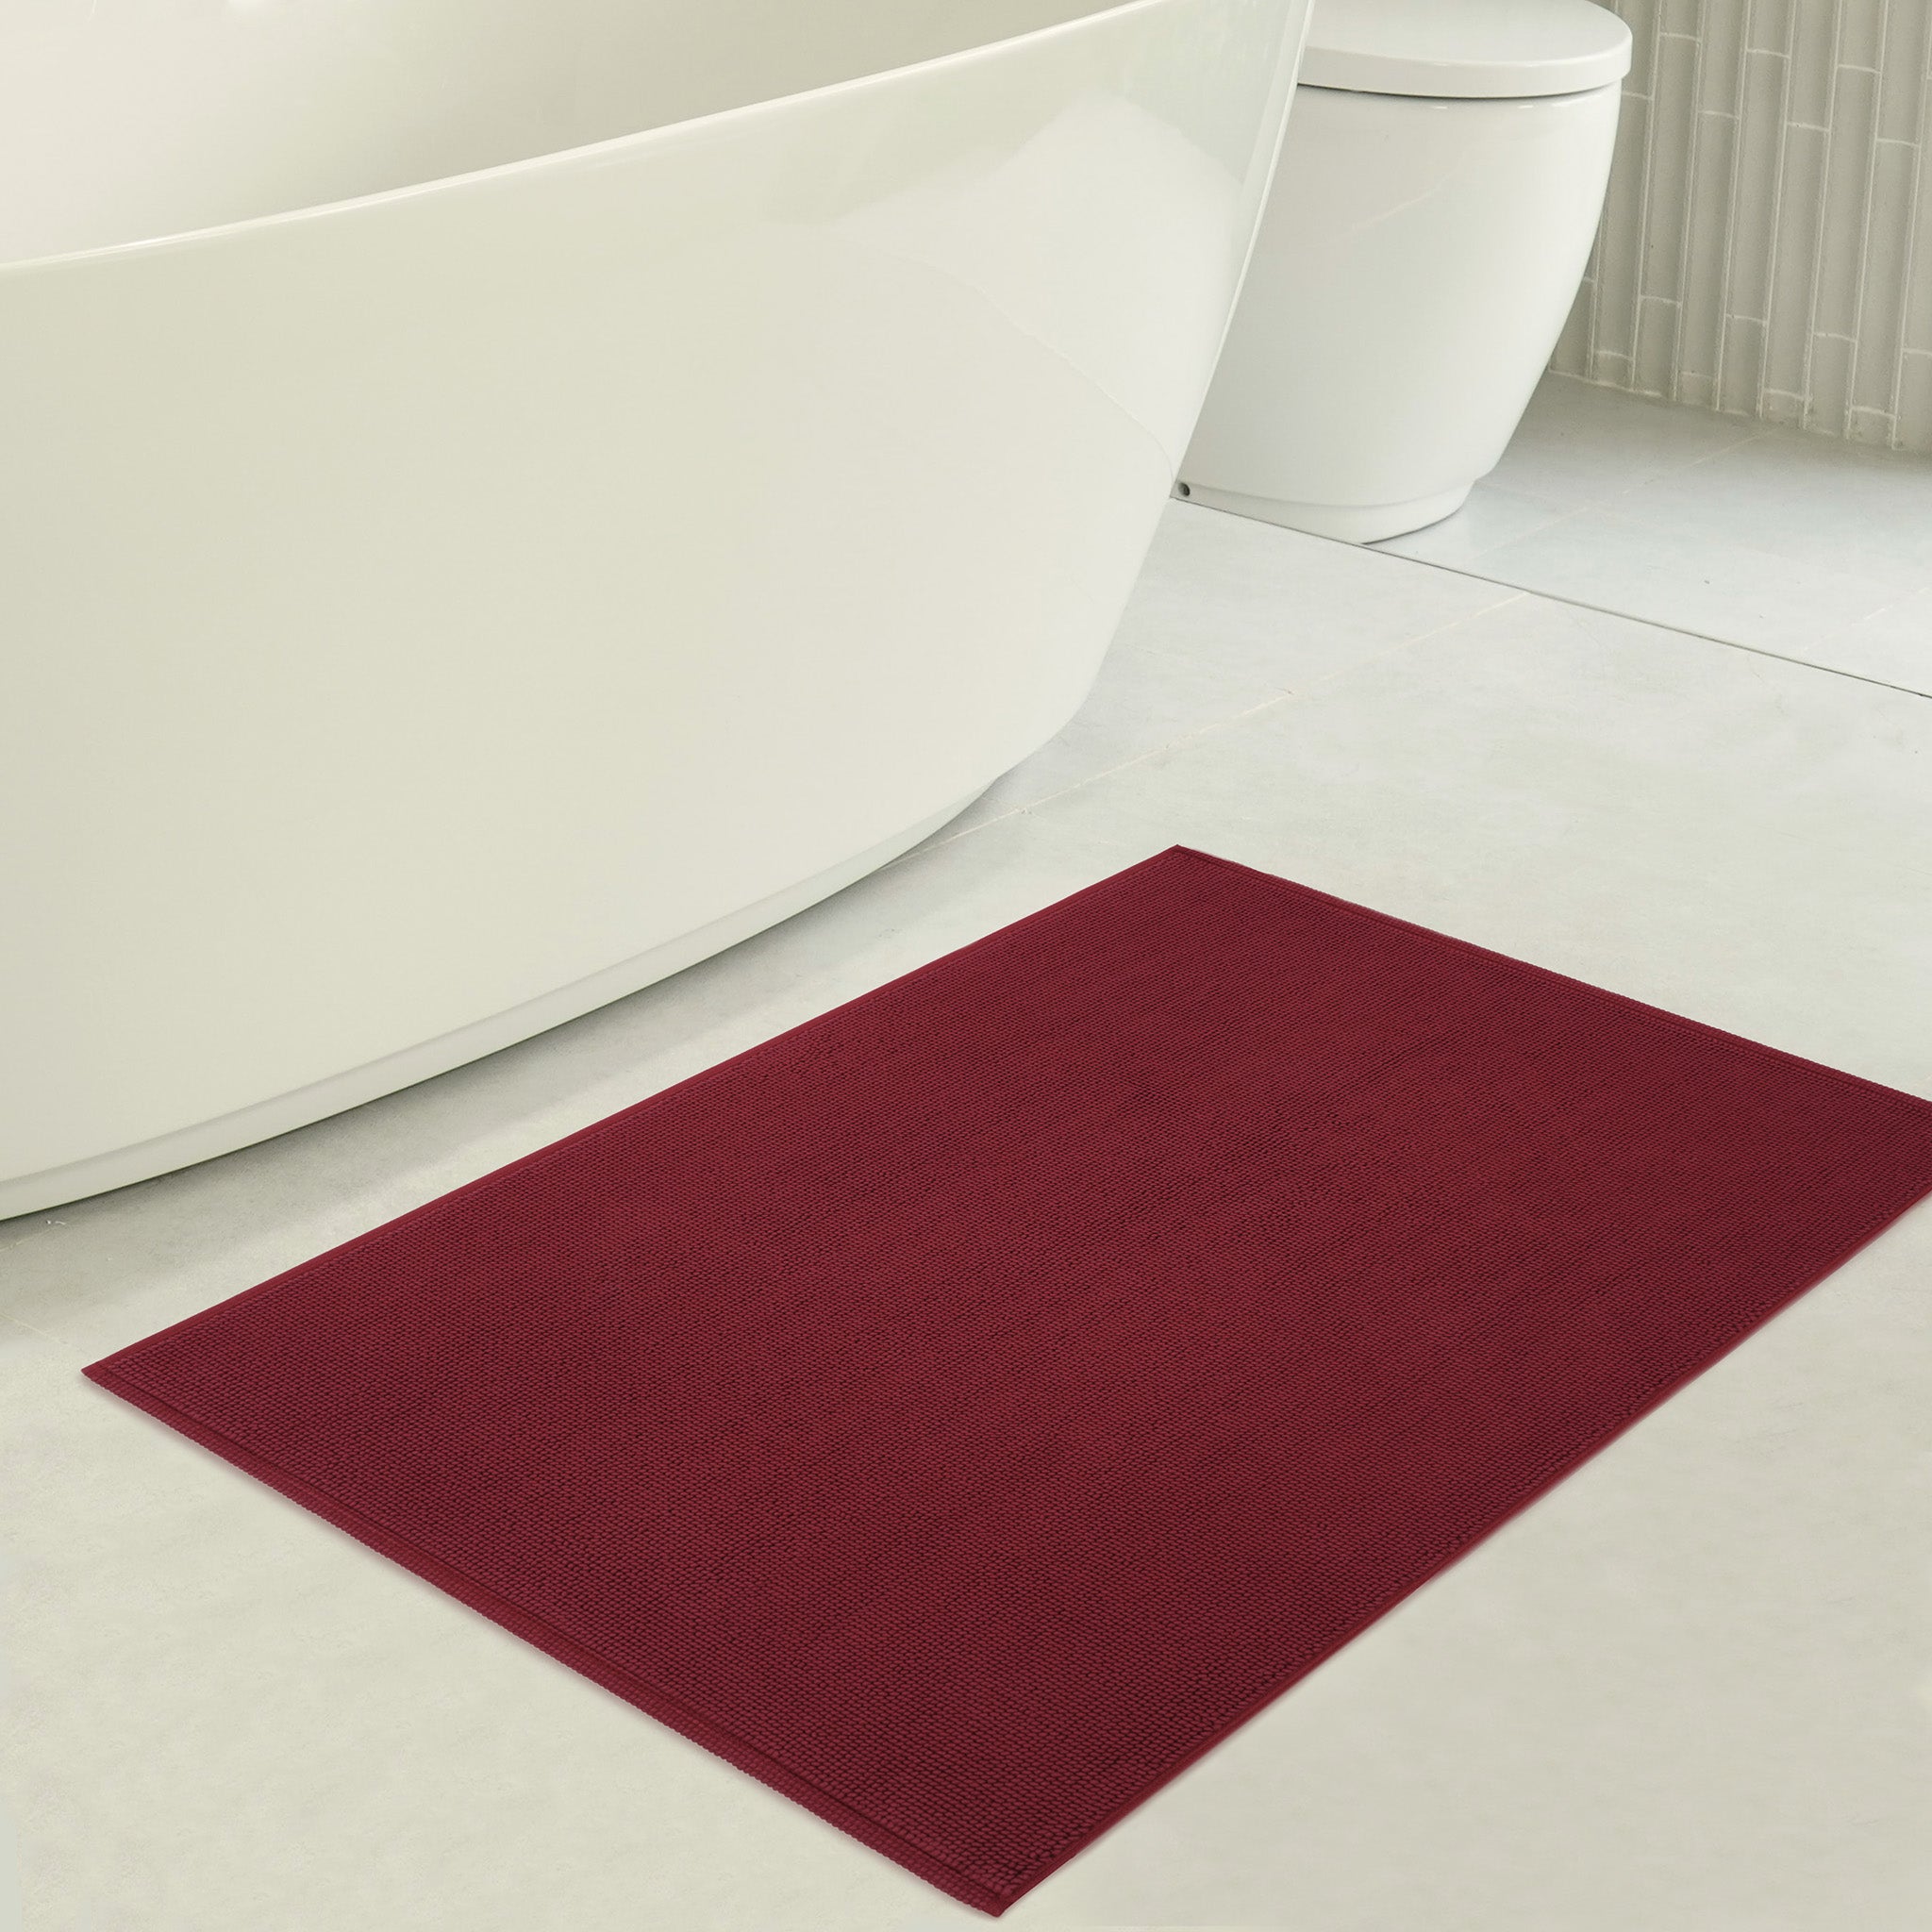 American Soft Linen Non-slip 20x34 100% Cotton Bath Rug Wholesale bordeaux-red-3